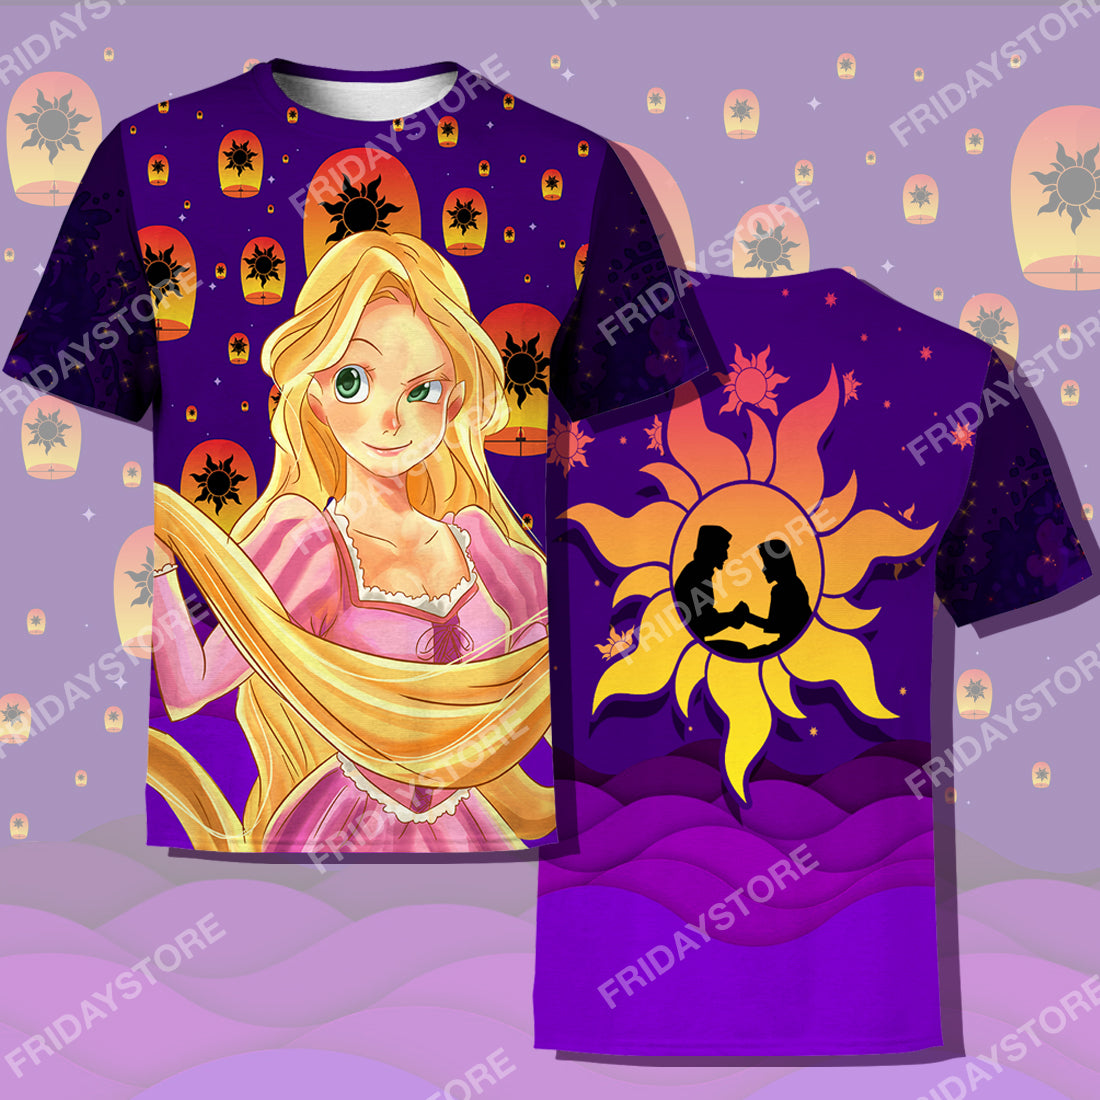 Unifinz DN Rapunzel T-shirt Princess Tangled Rapunzel Couple Silhouette T-shirt DN Tangled Apparel DN Rapunzel Hoodie Sweater Tank 2026